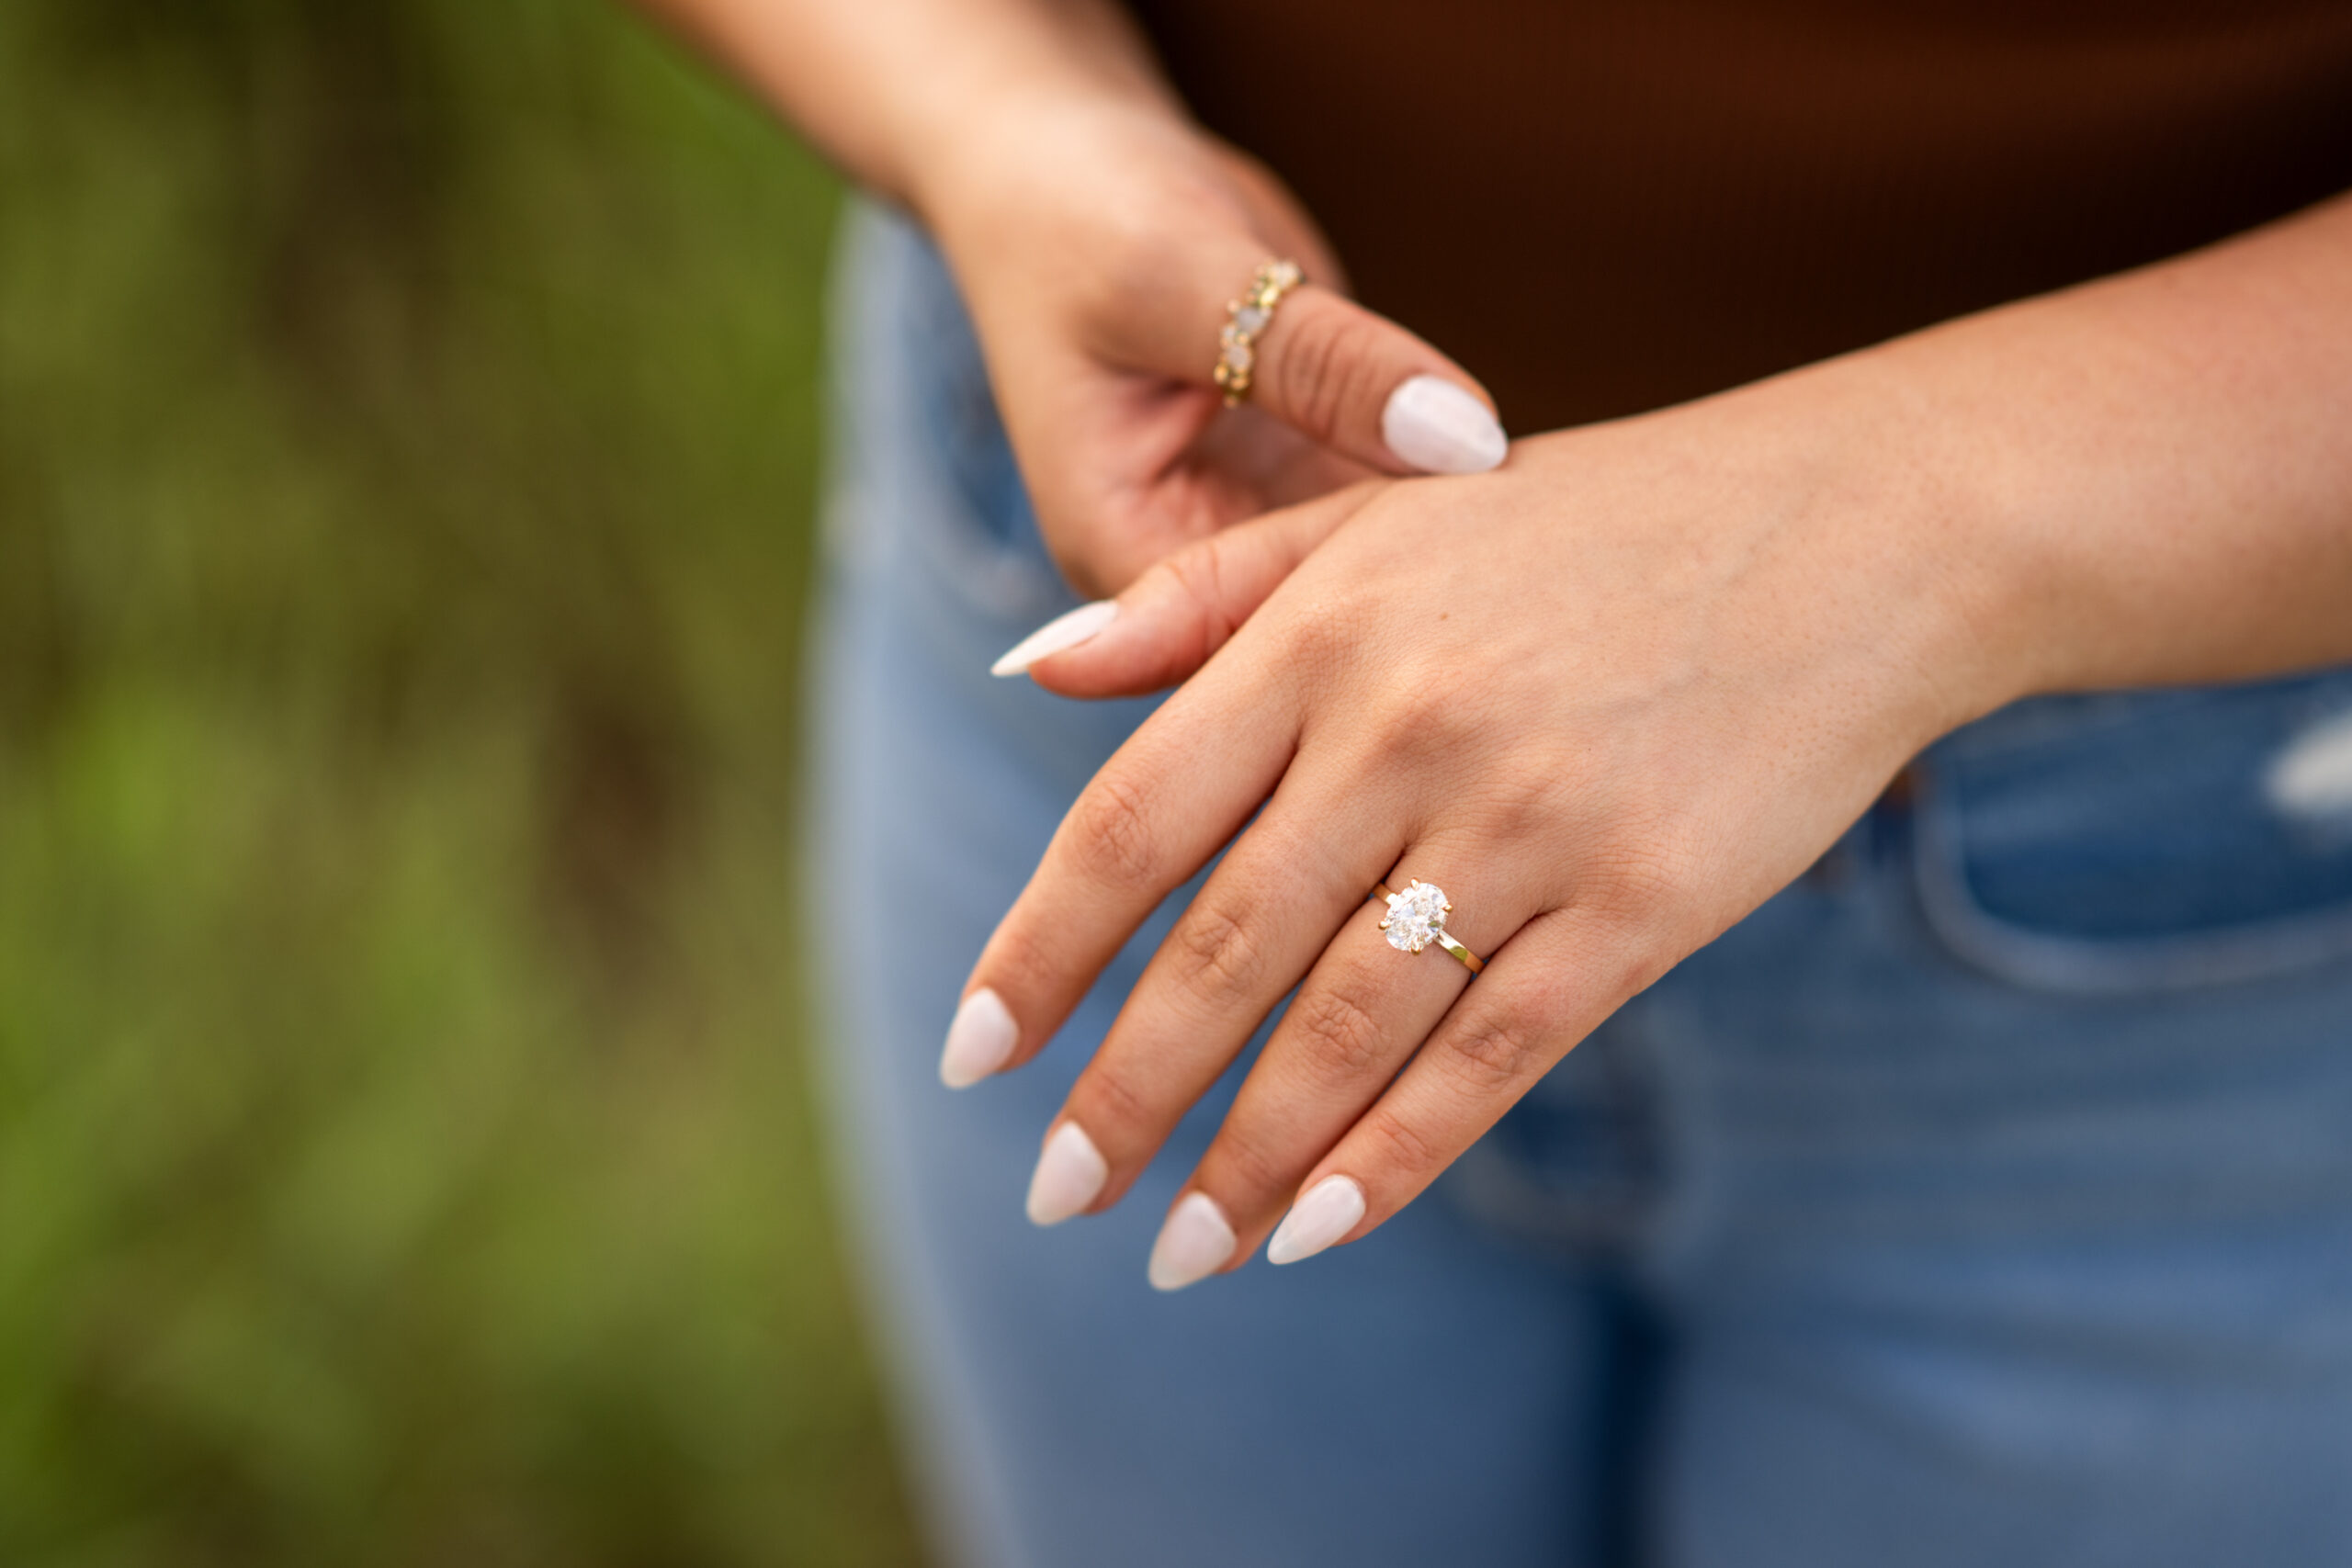 Elizabeth's engagement ring after a surprise proposal at Mt. Falcon Park East Trailhead near Denver, Colorado.